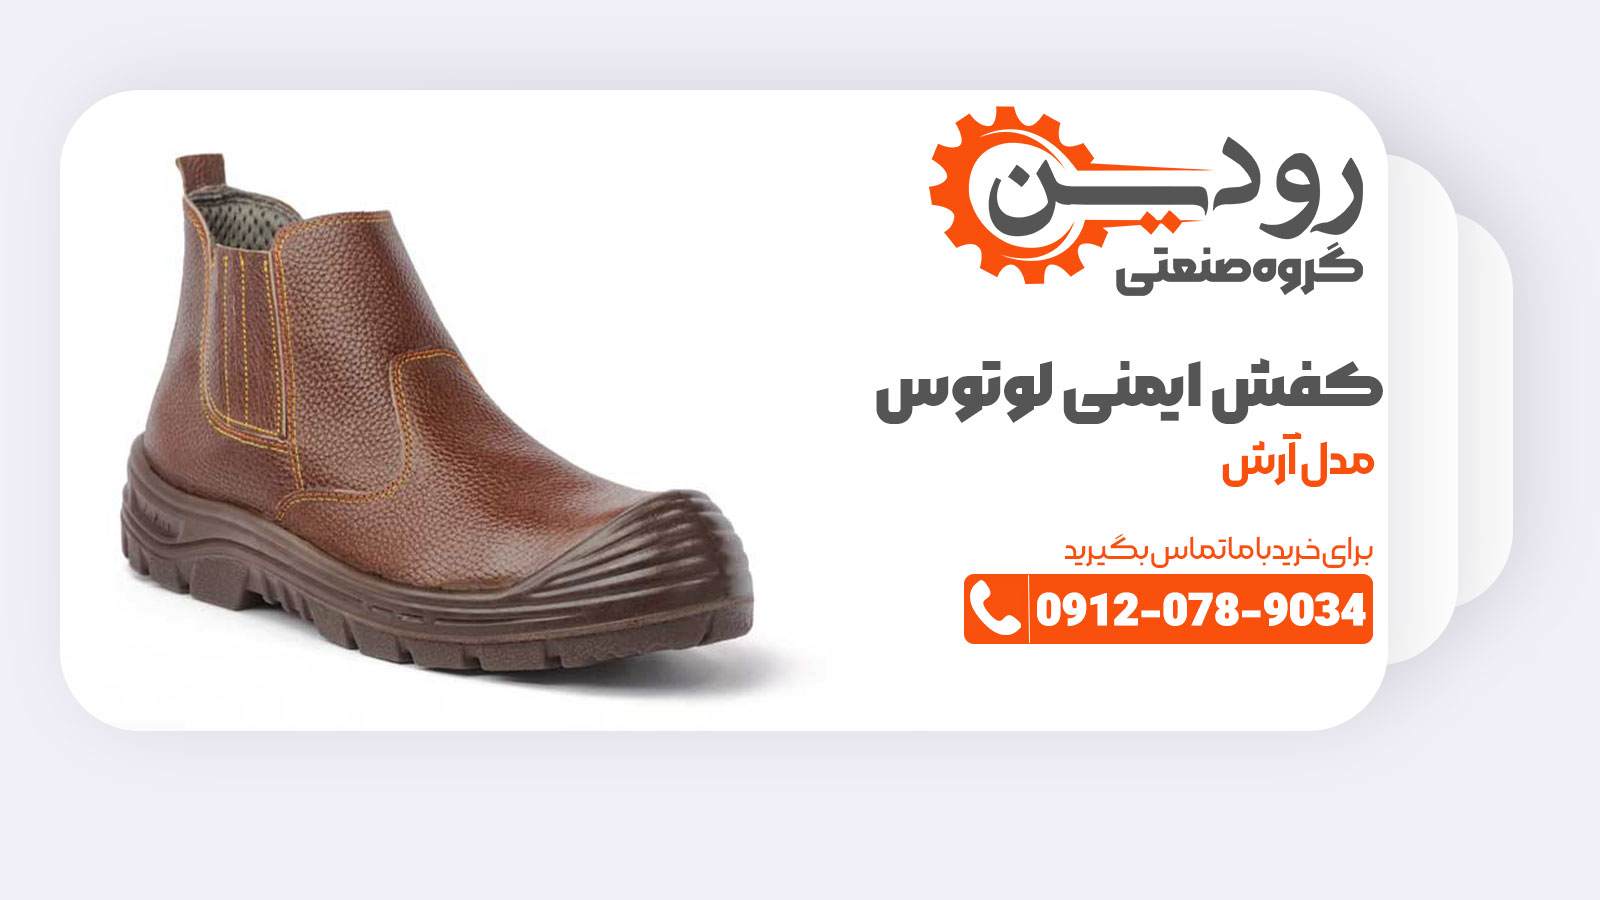 خرید مستقیم از تولیدی کفش ایمنی لوتوس تبریز با یک موبایل هم قابل انجام است.